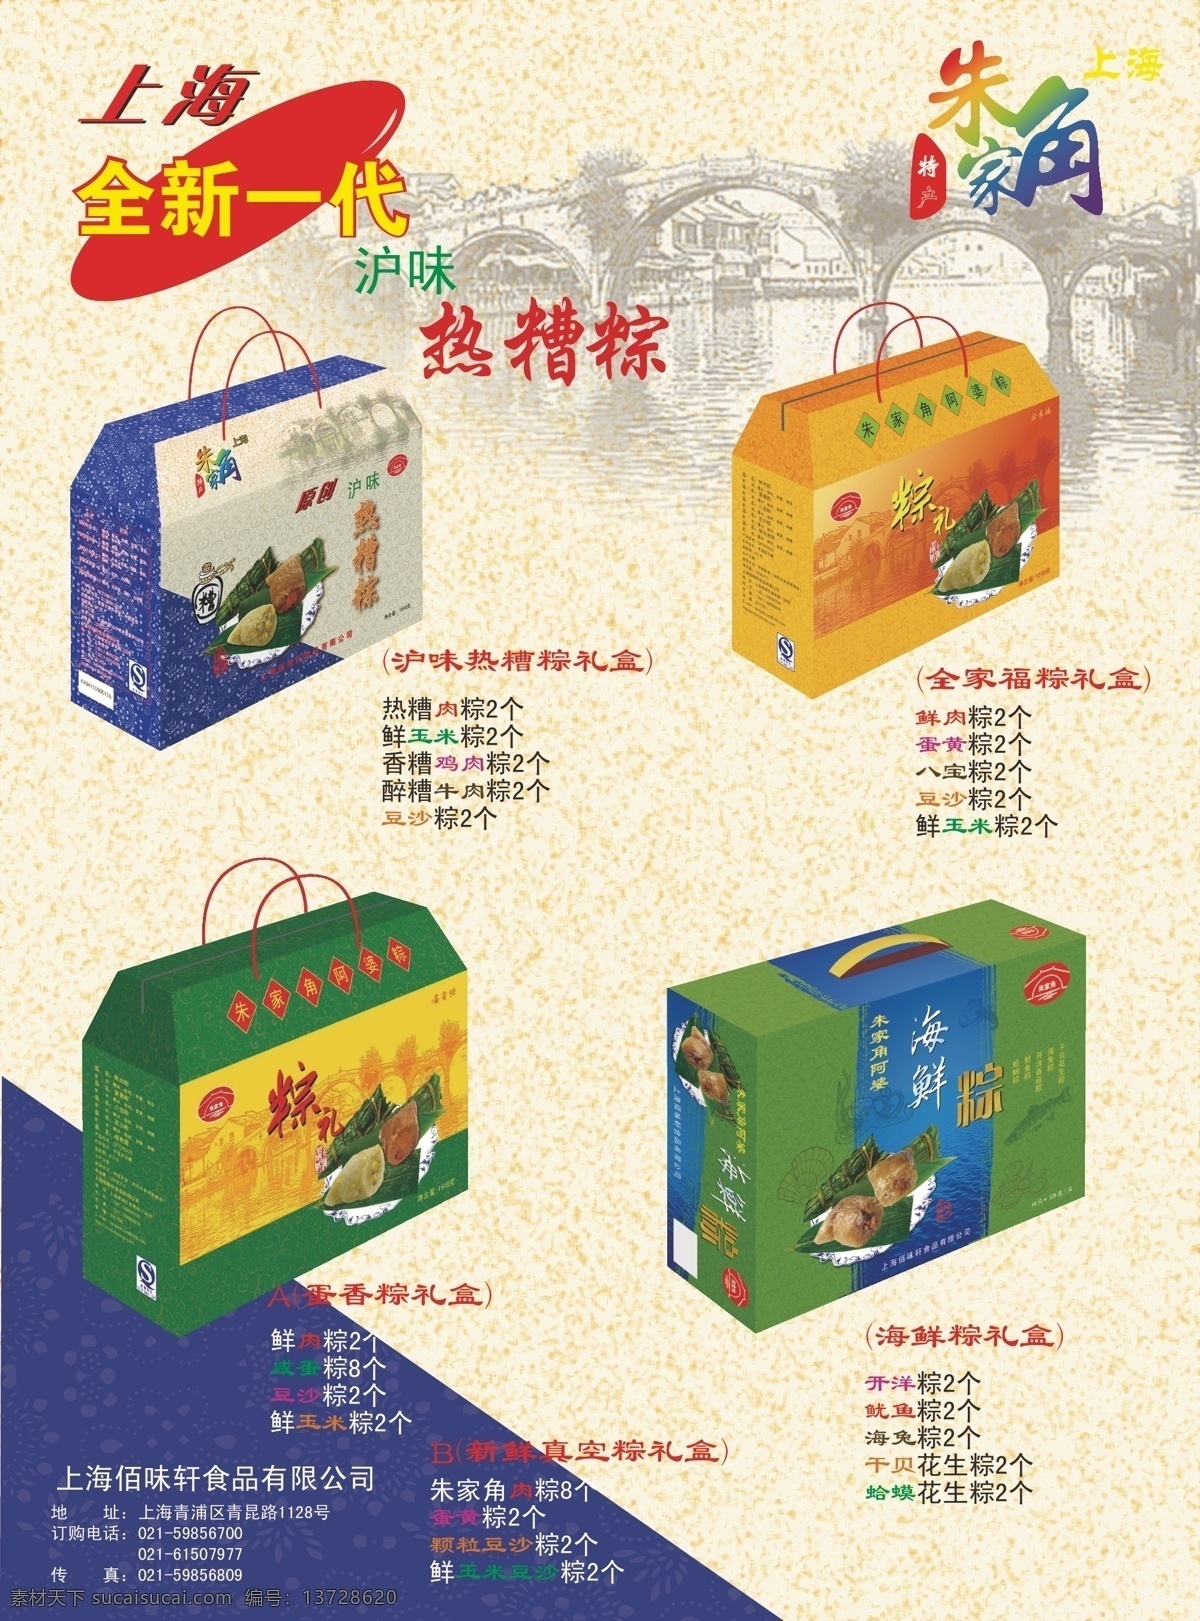 佰味轩 食品 粽子 单页 宣传单 广告 礼盒 朱家角 展板模板 矢量